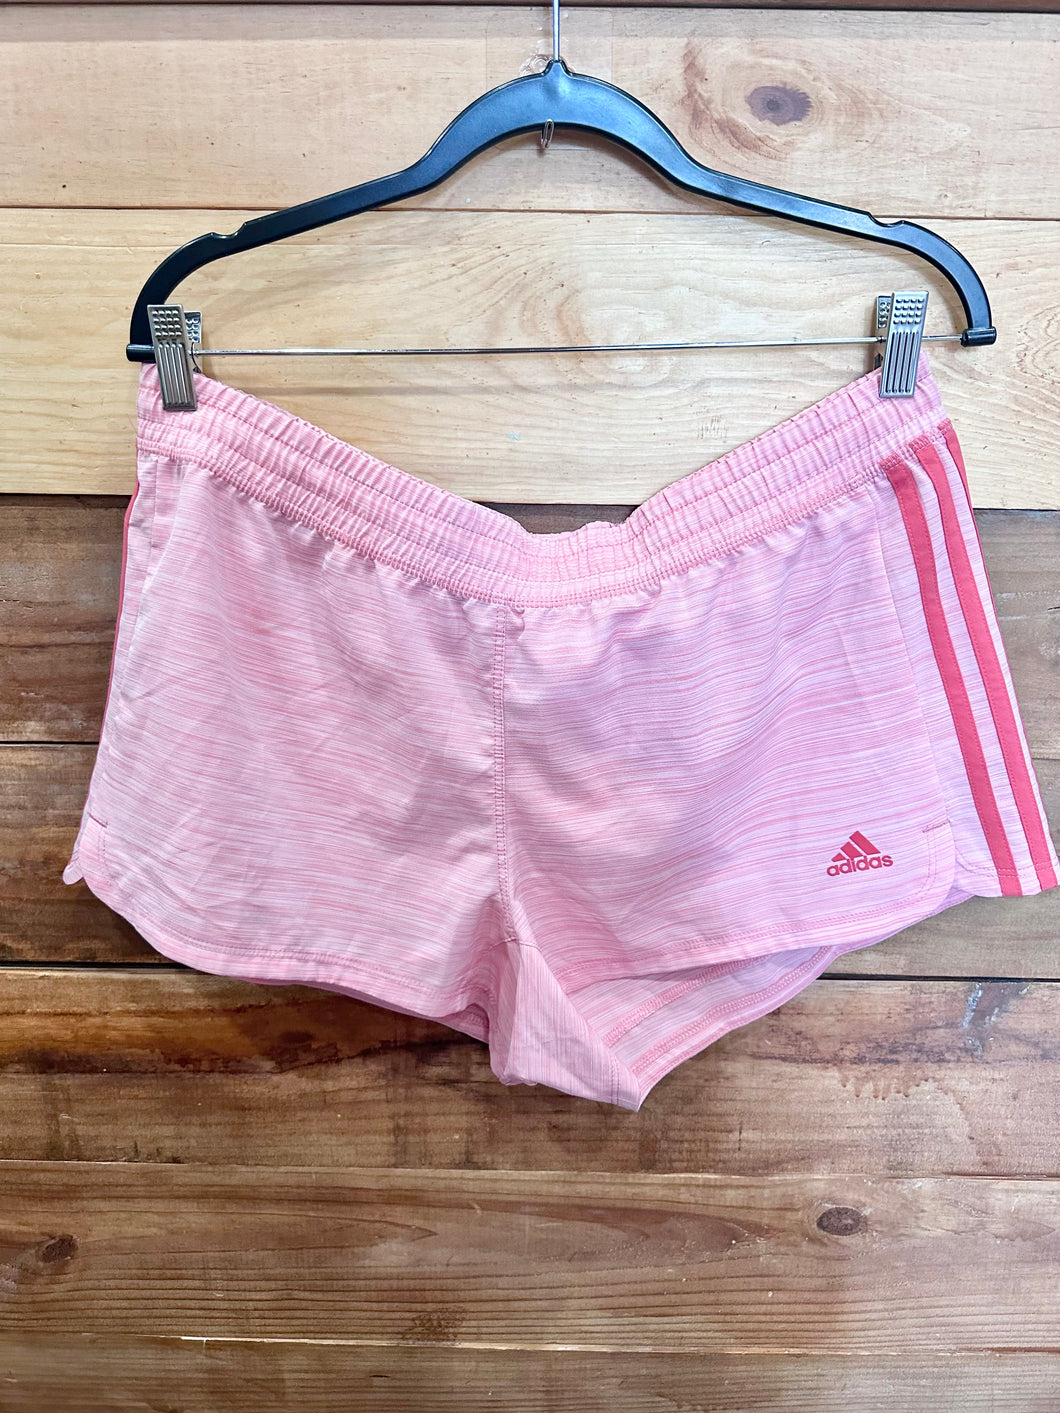 Adidas Pink Shorts Size Large